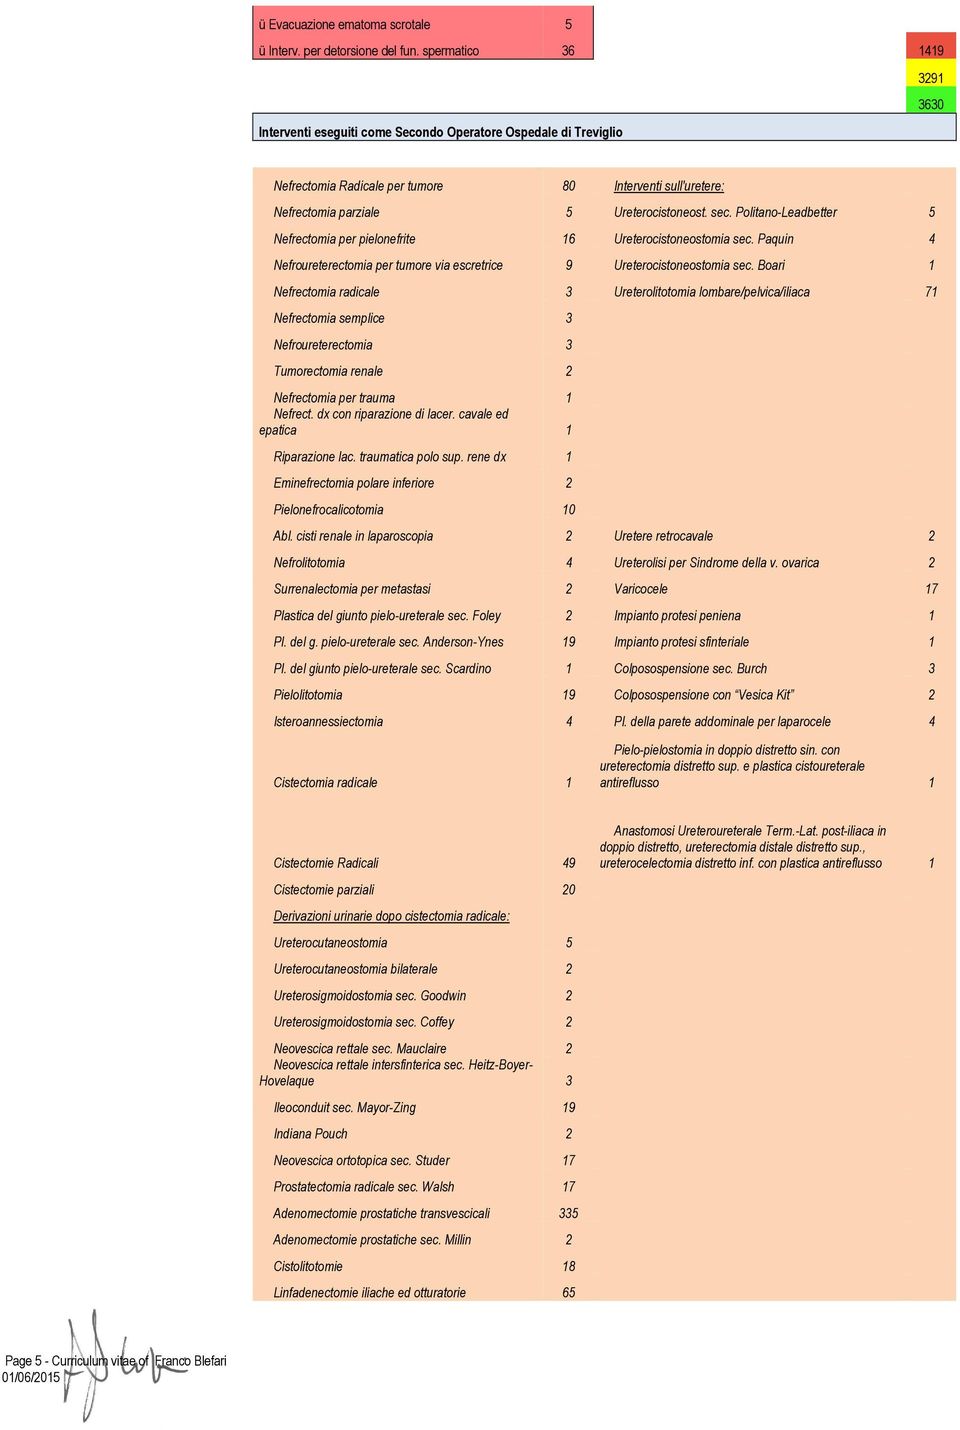 Politano-Leadbetter 5 Nefrectomia per pielonefrite 16 Ureterocistoneostomia sec. Paquin 4 Nefroureterectomia per tumore via escretrice 9 Ureterocistoneostomia sec.